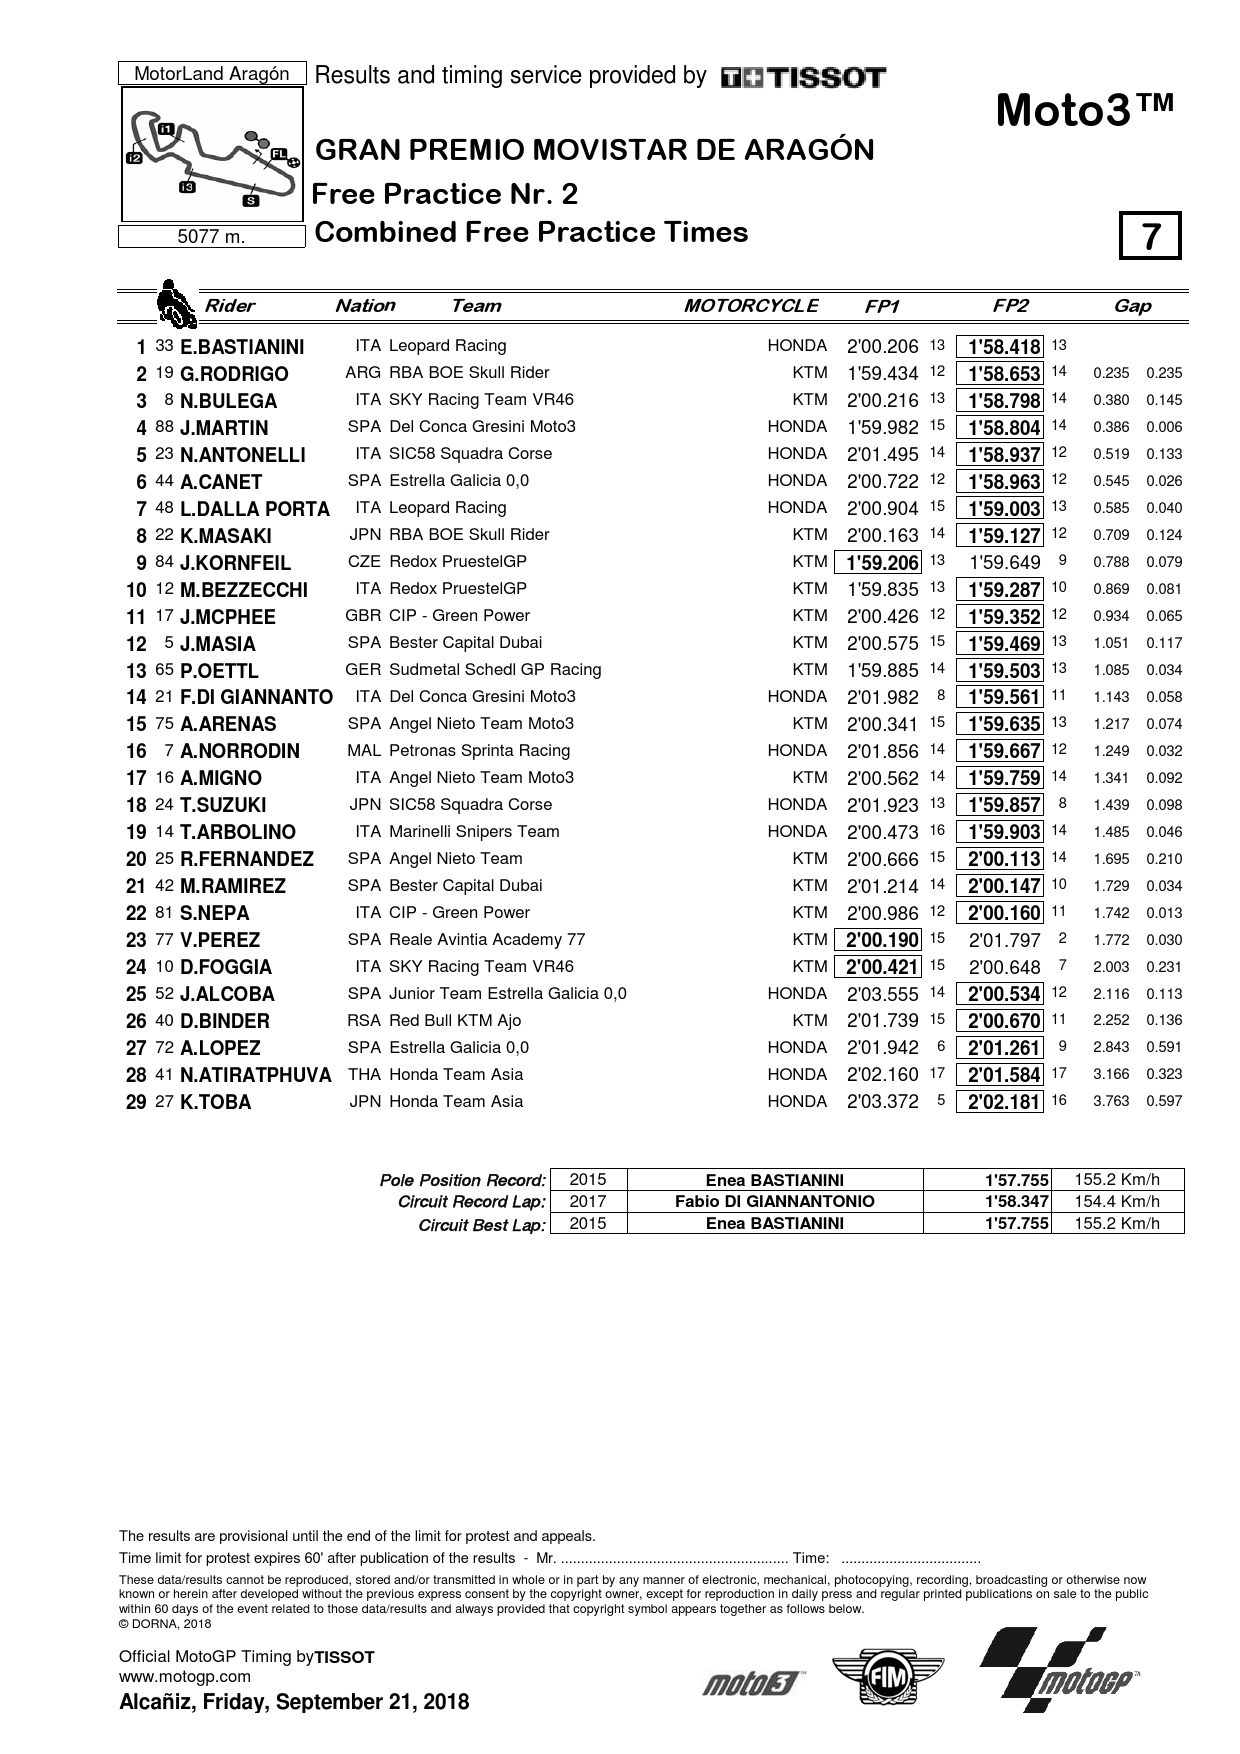 Moto3 результаты FP1-FP2 Гран-При Арагона